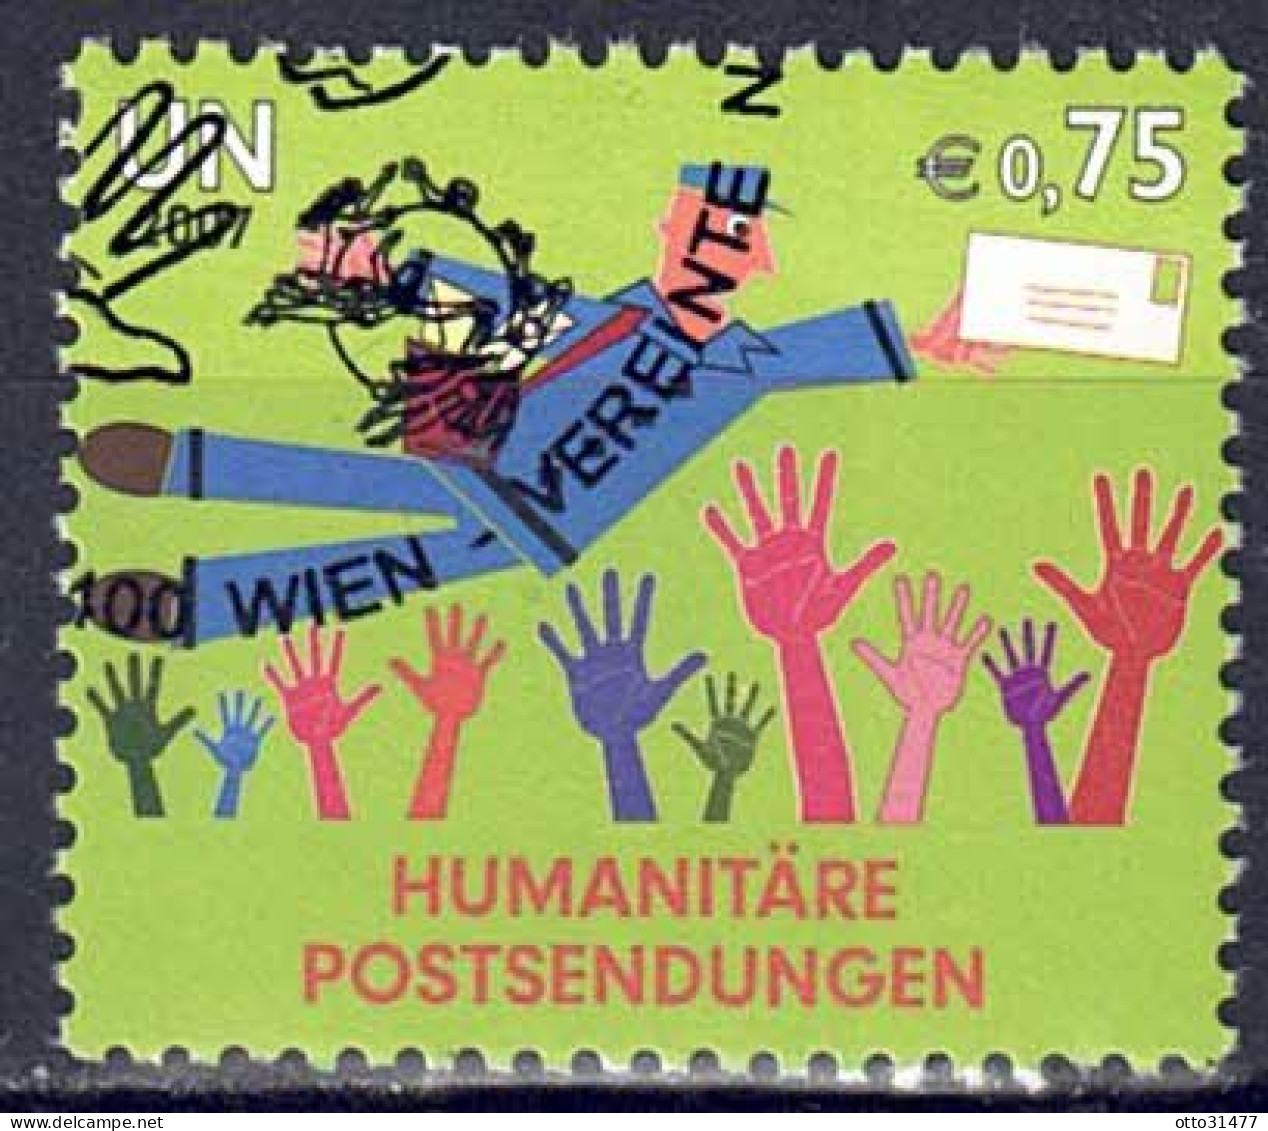 UNO Wien 2007 - Postsendungen, Nr. 512, Gestempelt / Used - Used Stamps